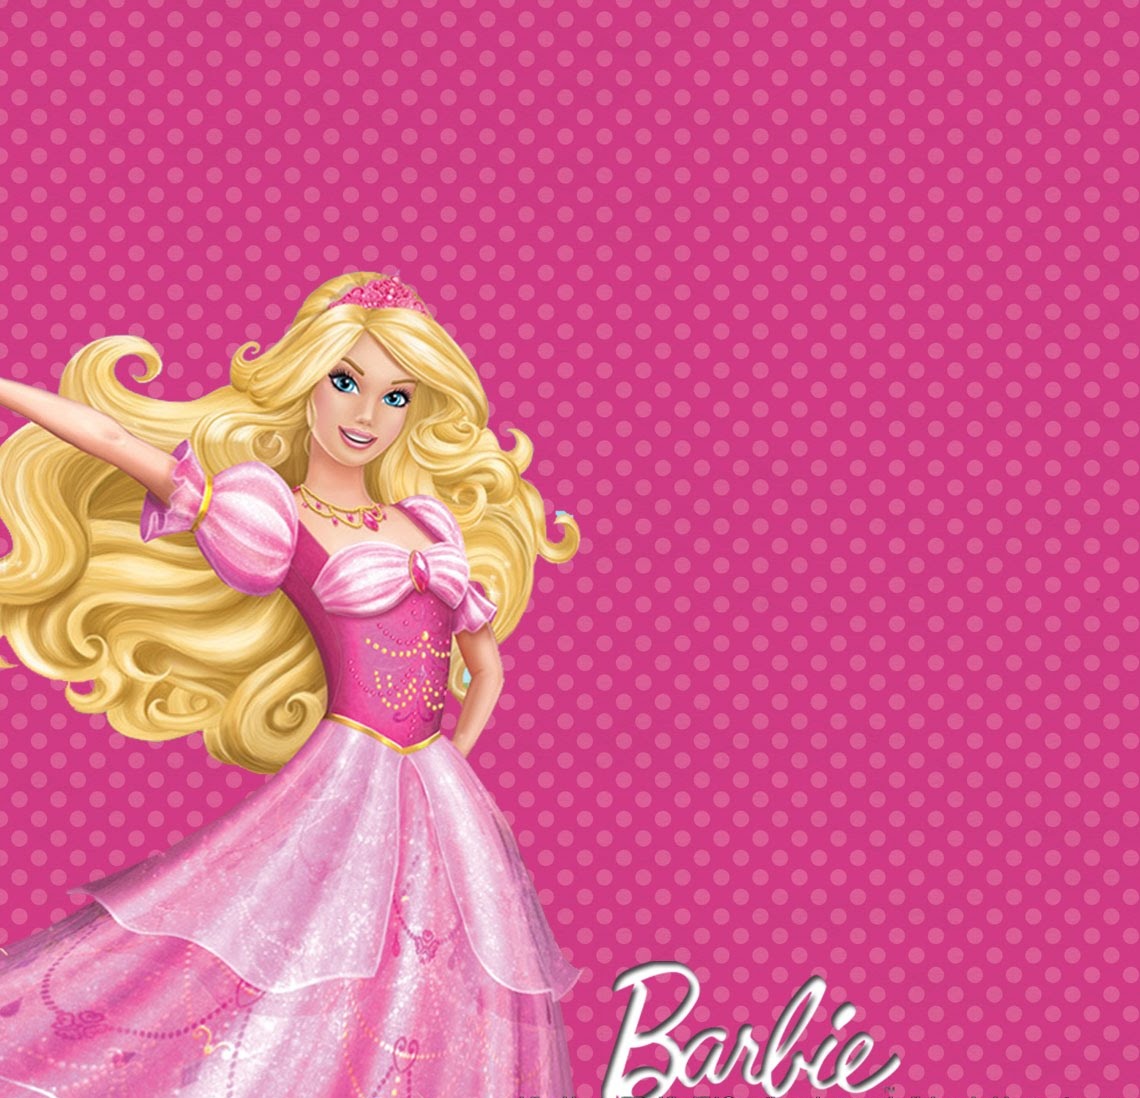 Barbie wallpaper - Barbie Photo 37290941 - Fanpop